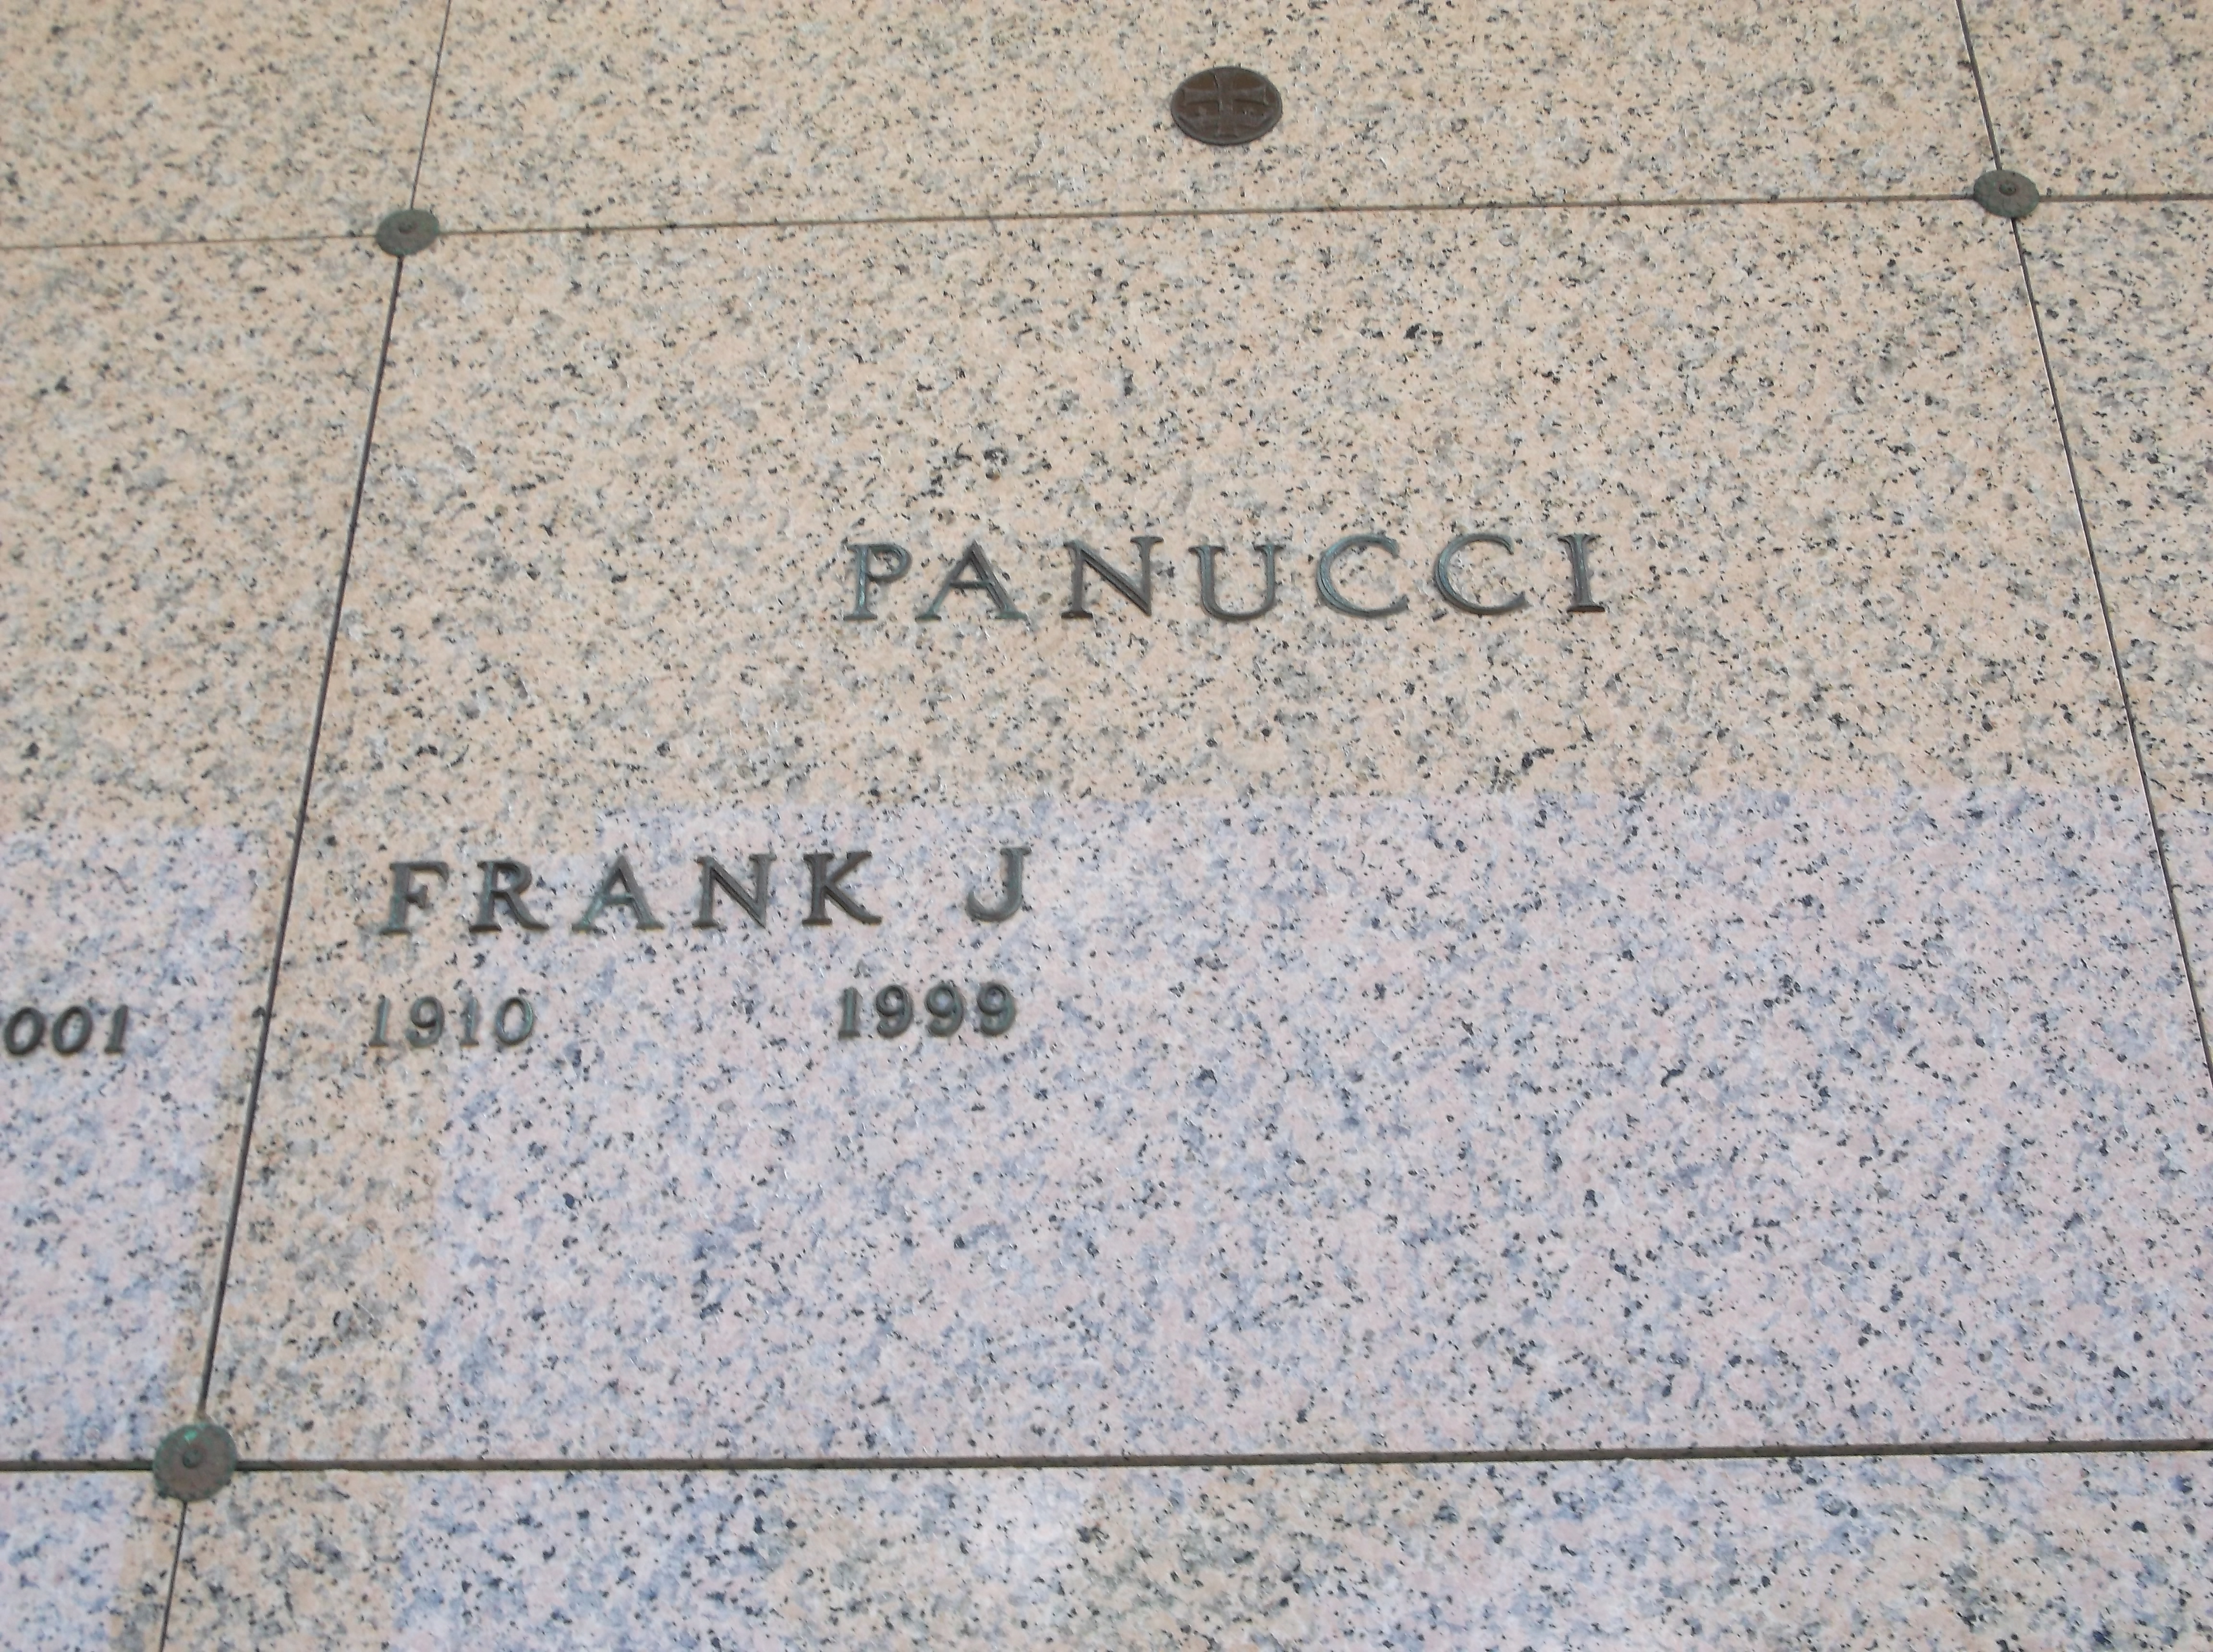 Frank J Panucci